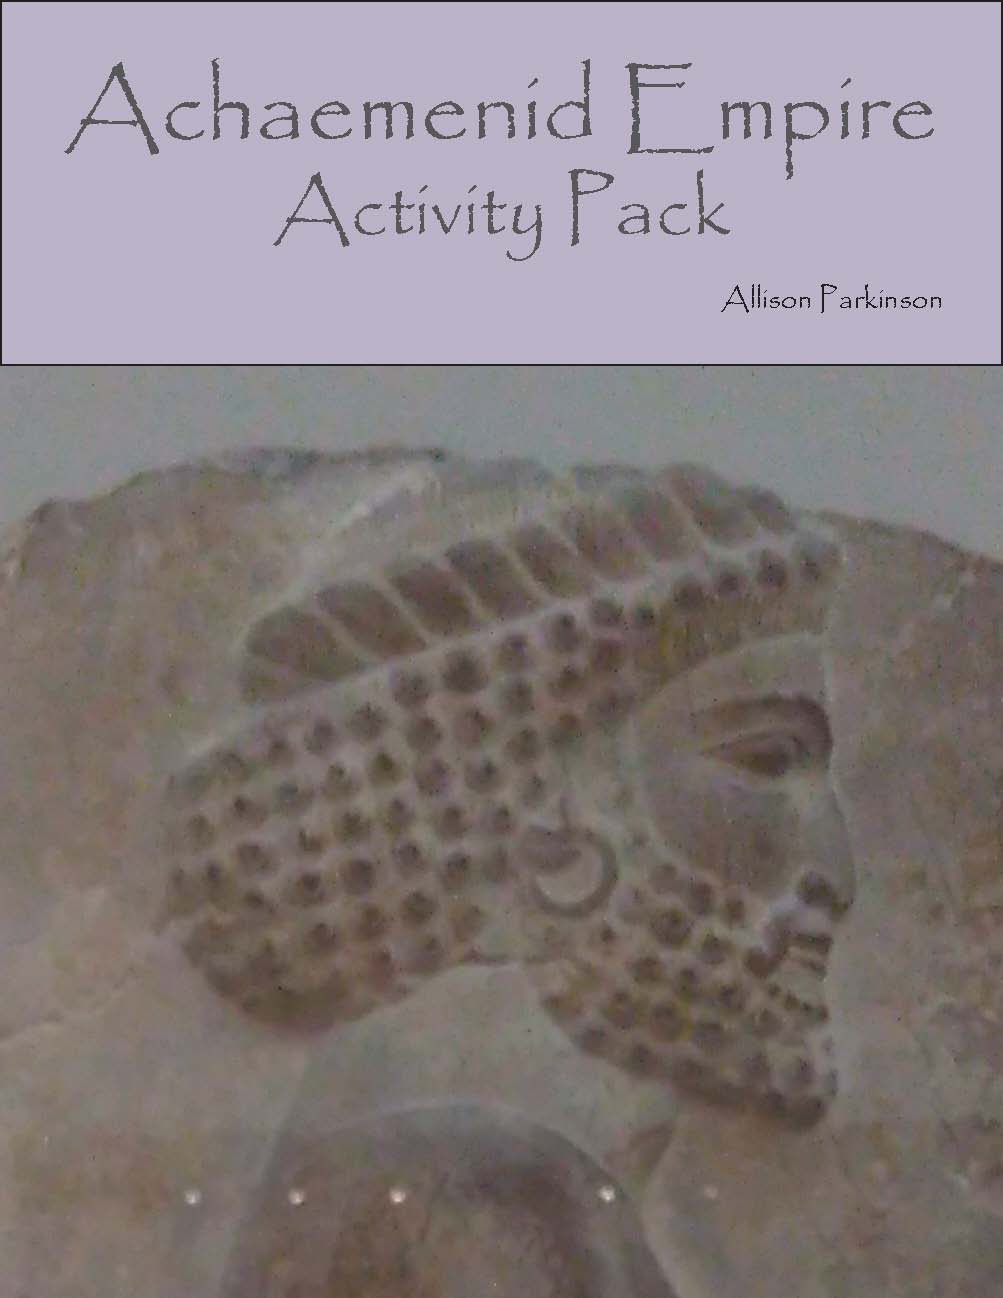 Achaemenid themed activities pack